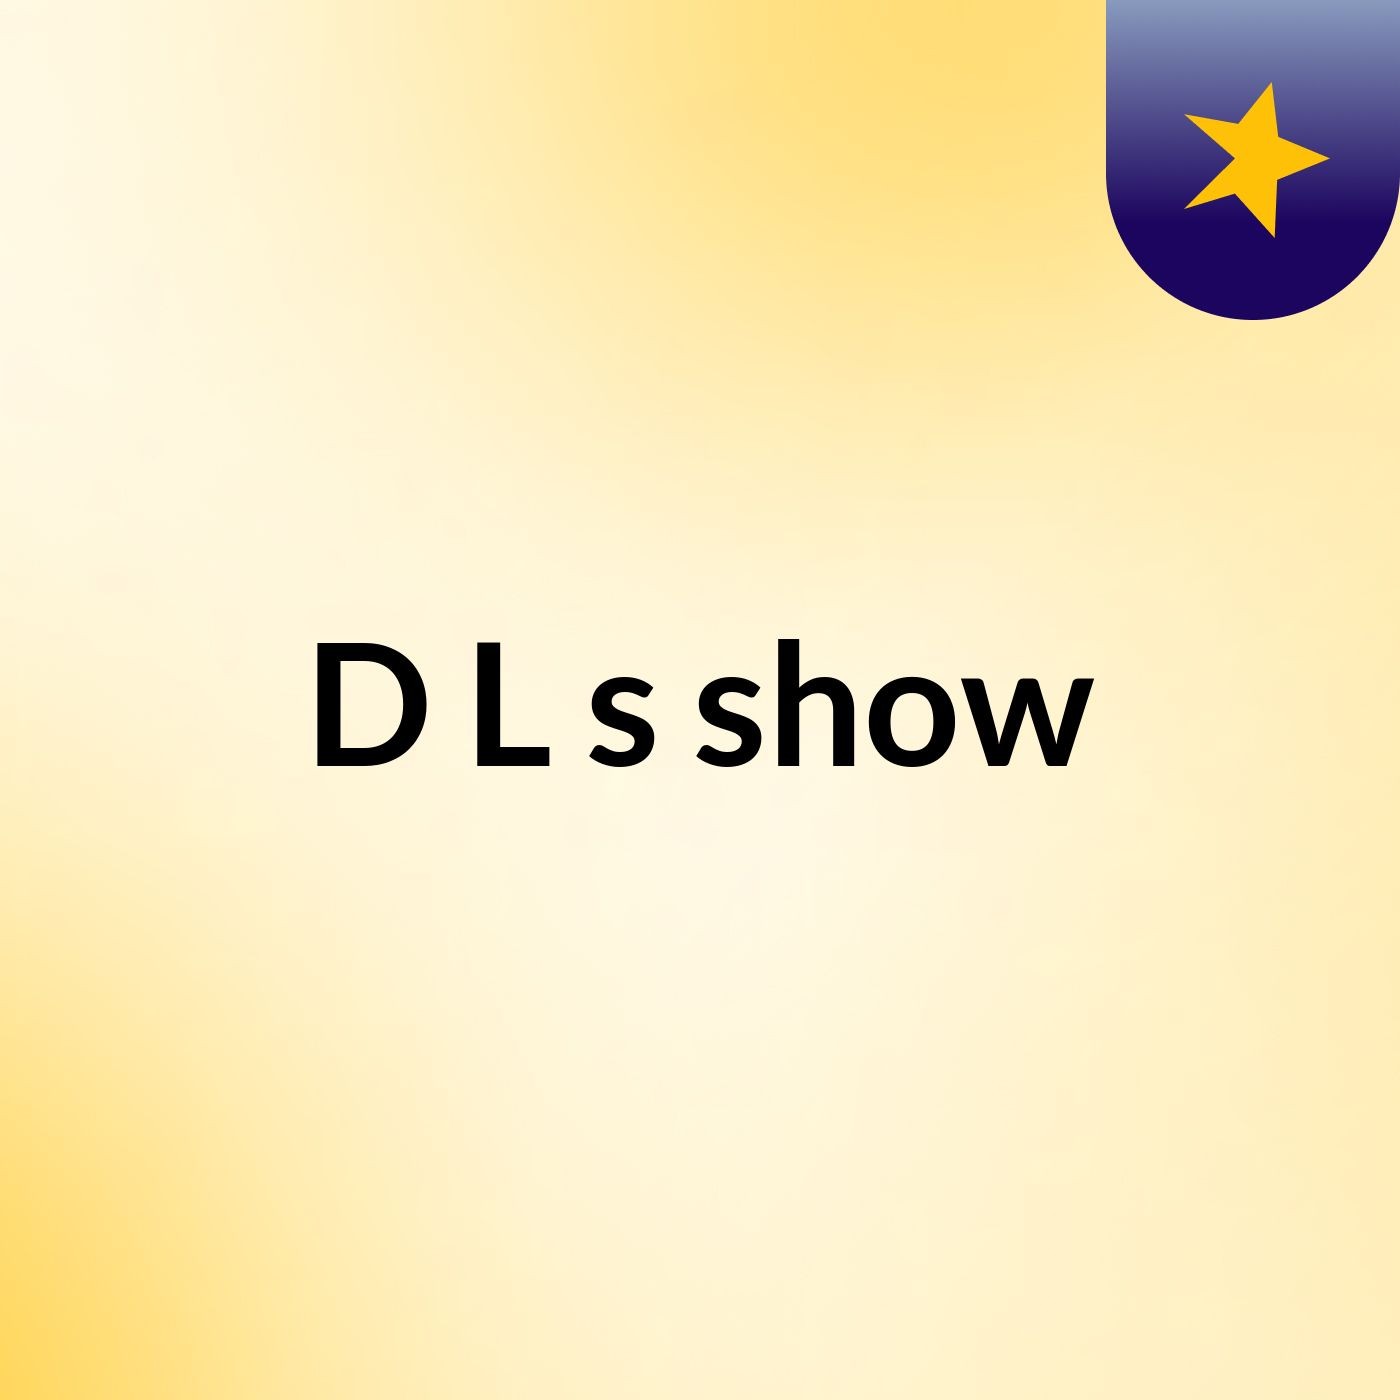 D&L's show